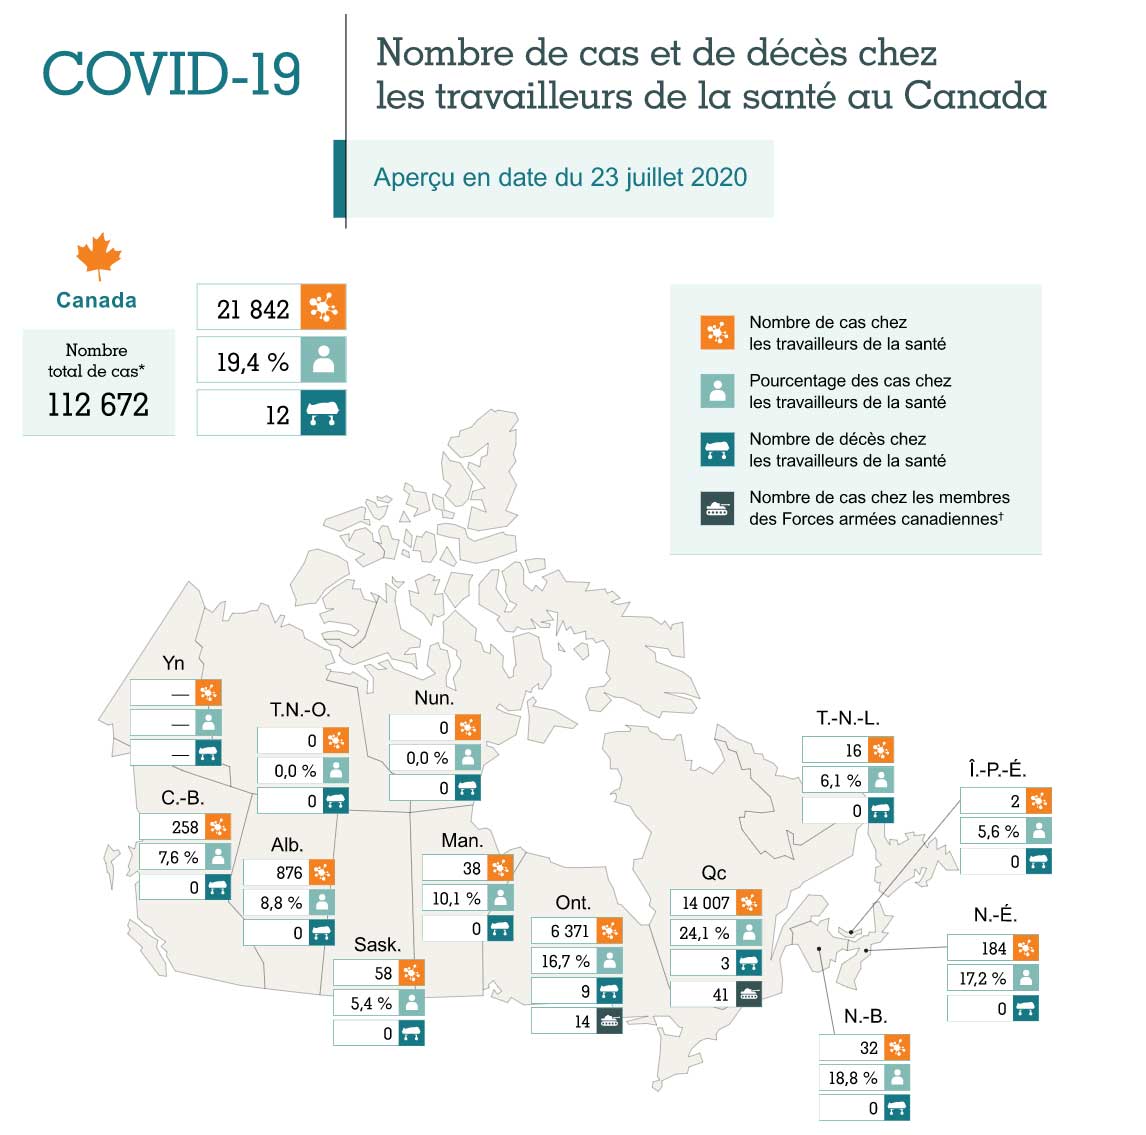 Nombre de cas et de décès liés à la COVID-19 chez les travailleurs de la santé au Canada